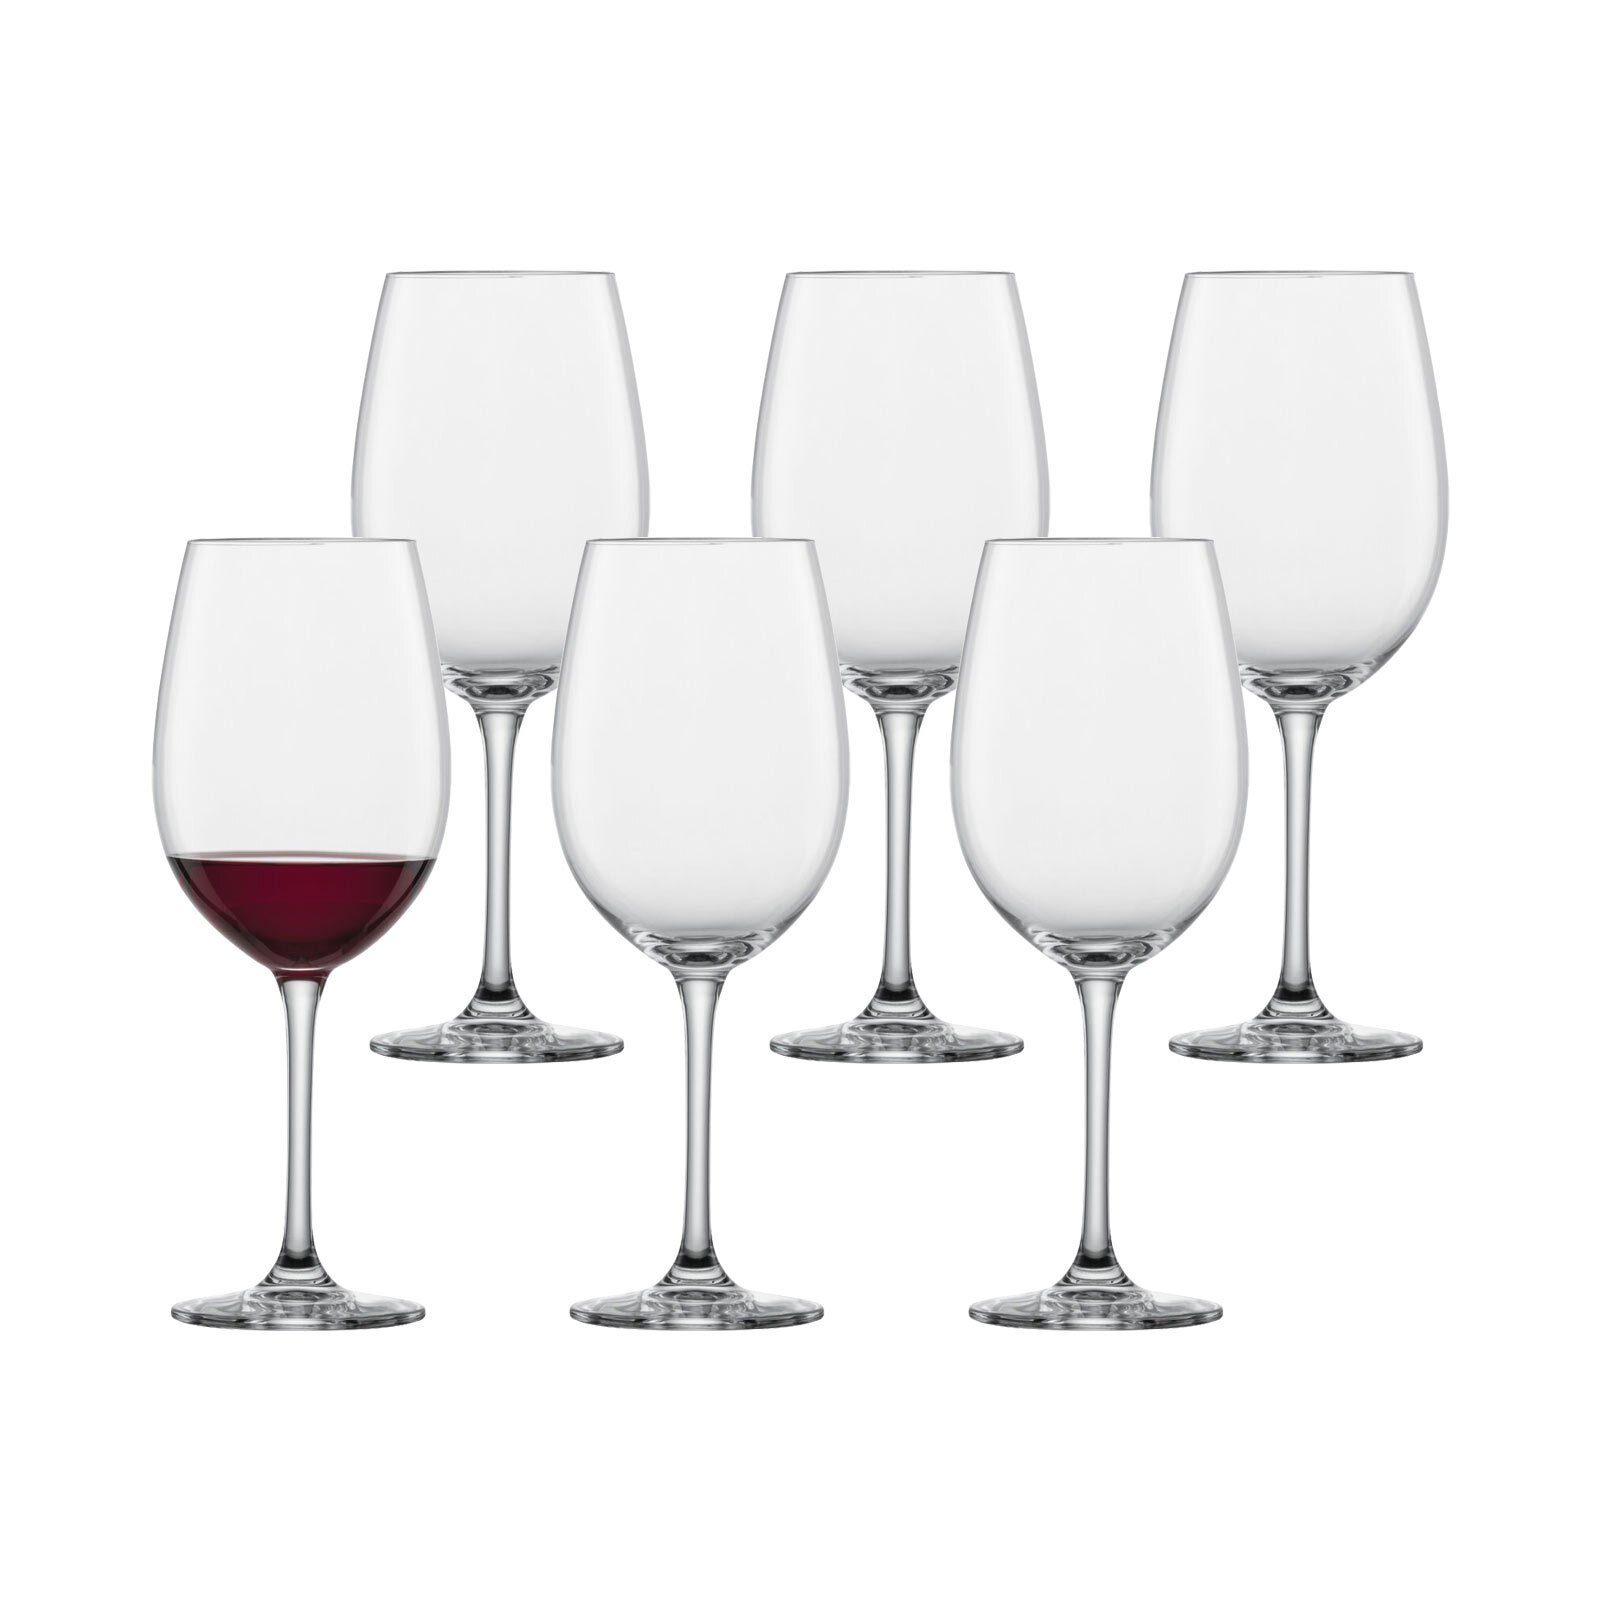 SCHOTT-ZWIESEL Weinglas Classico Burgunder Бокалы для красного вина 408 ml 6er Set, Glas